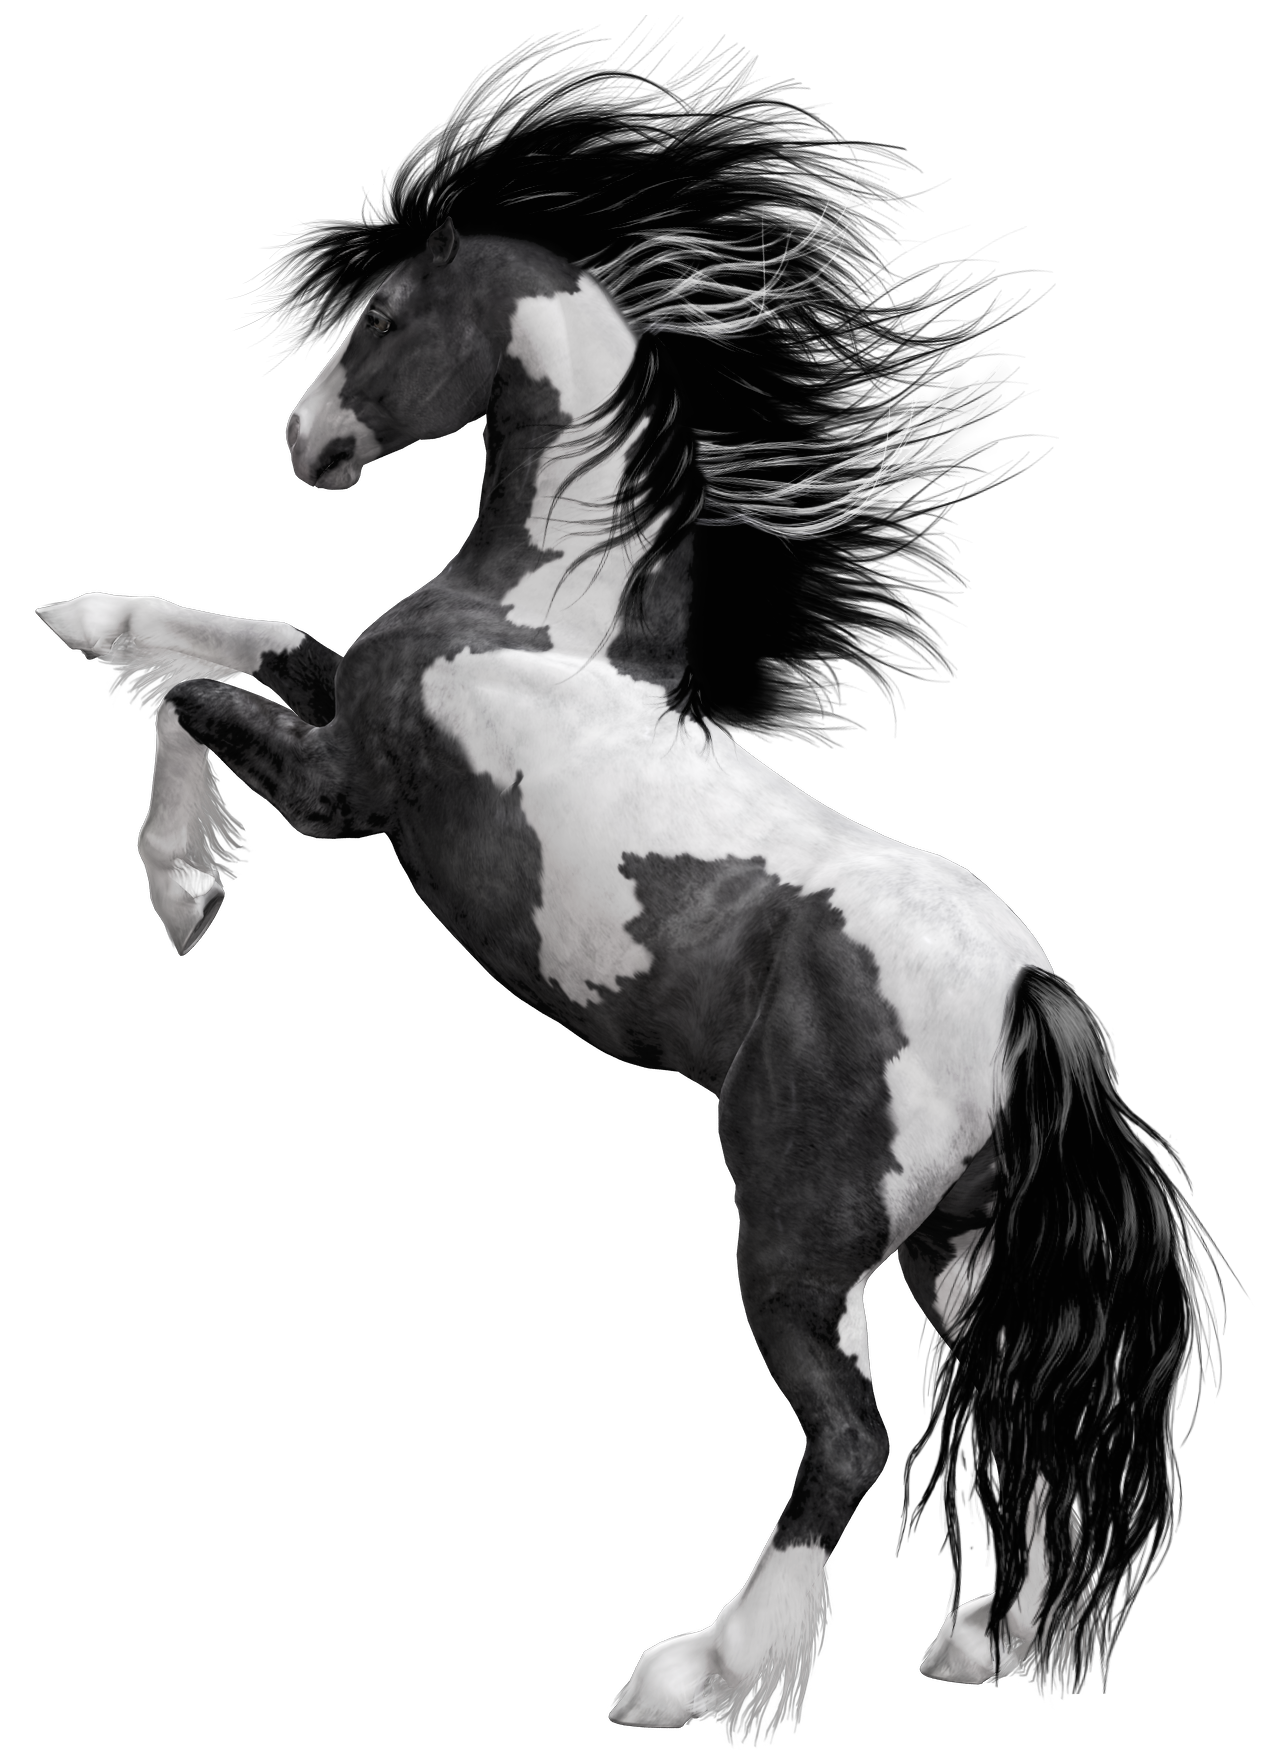 دانلود رایگان اسب سفید مشکی جذاب و زیبا با فرمت PNG